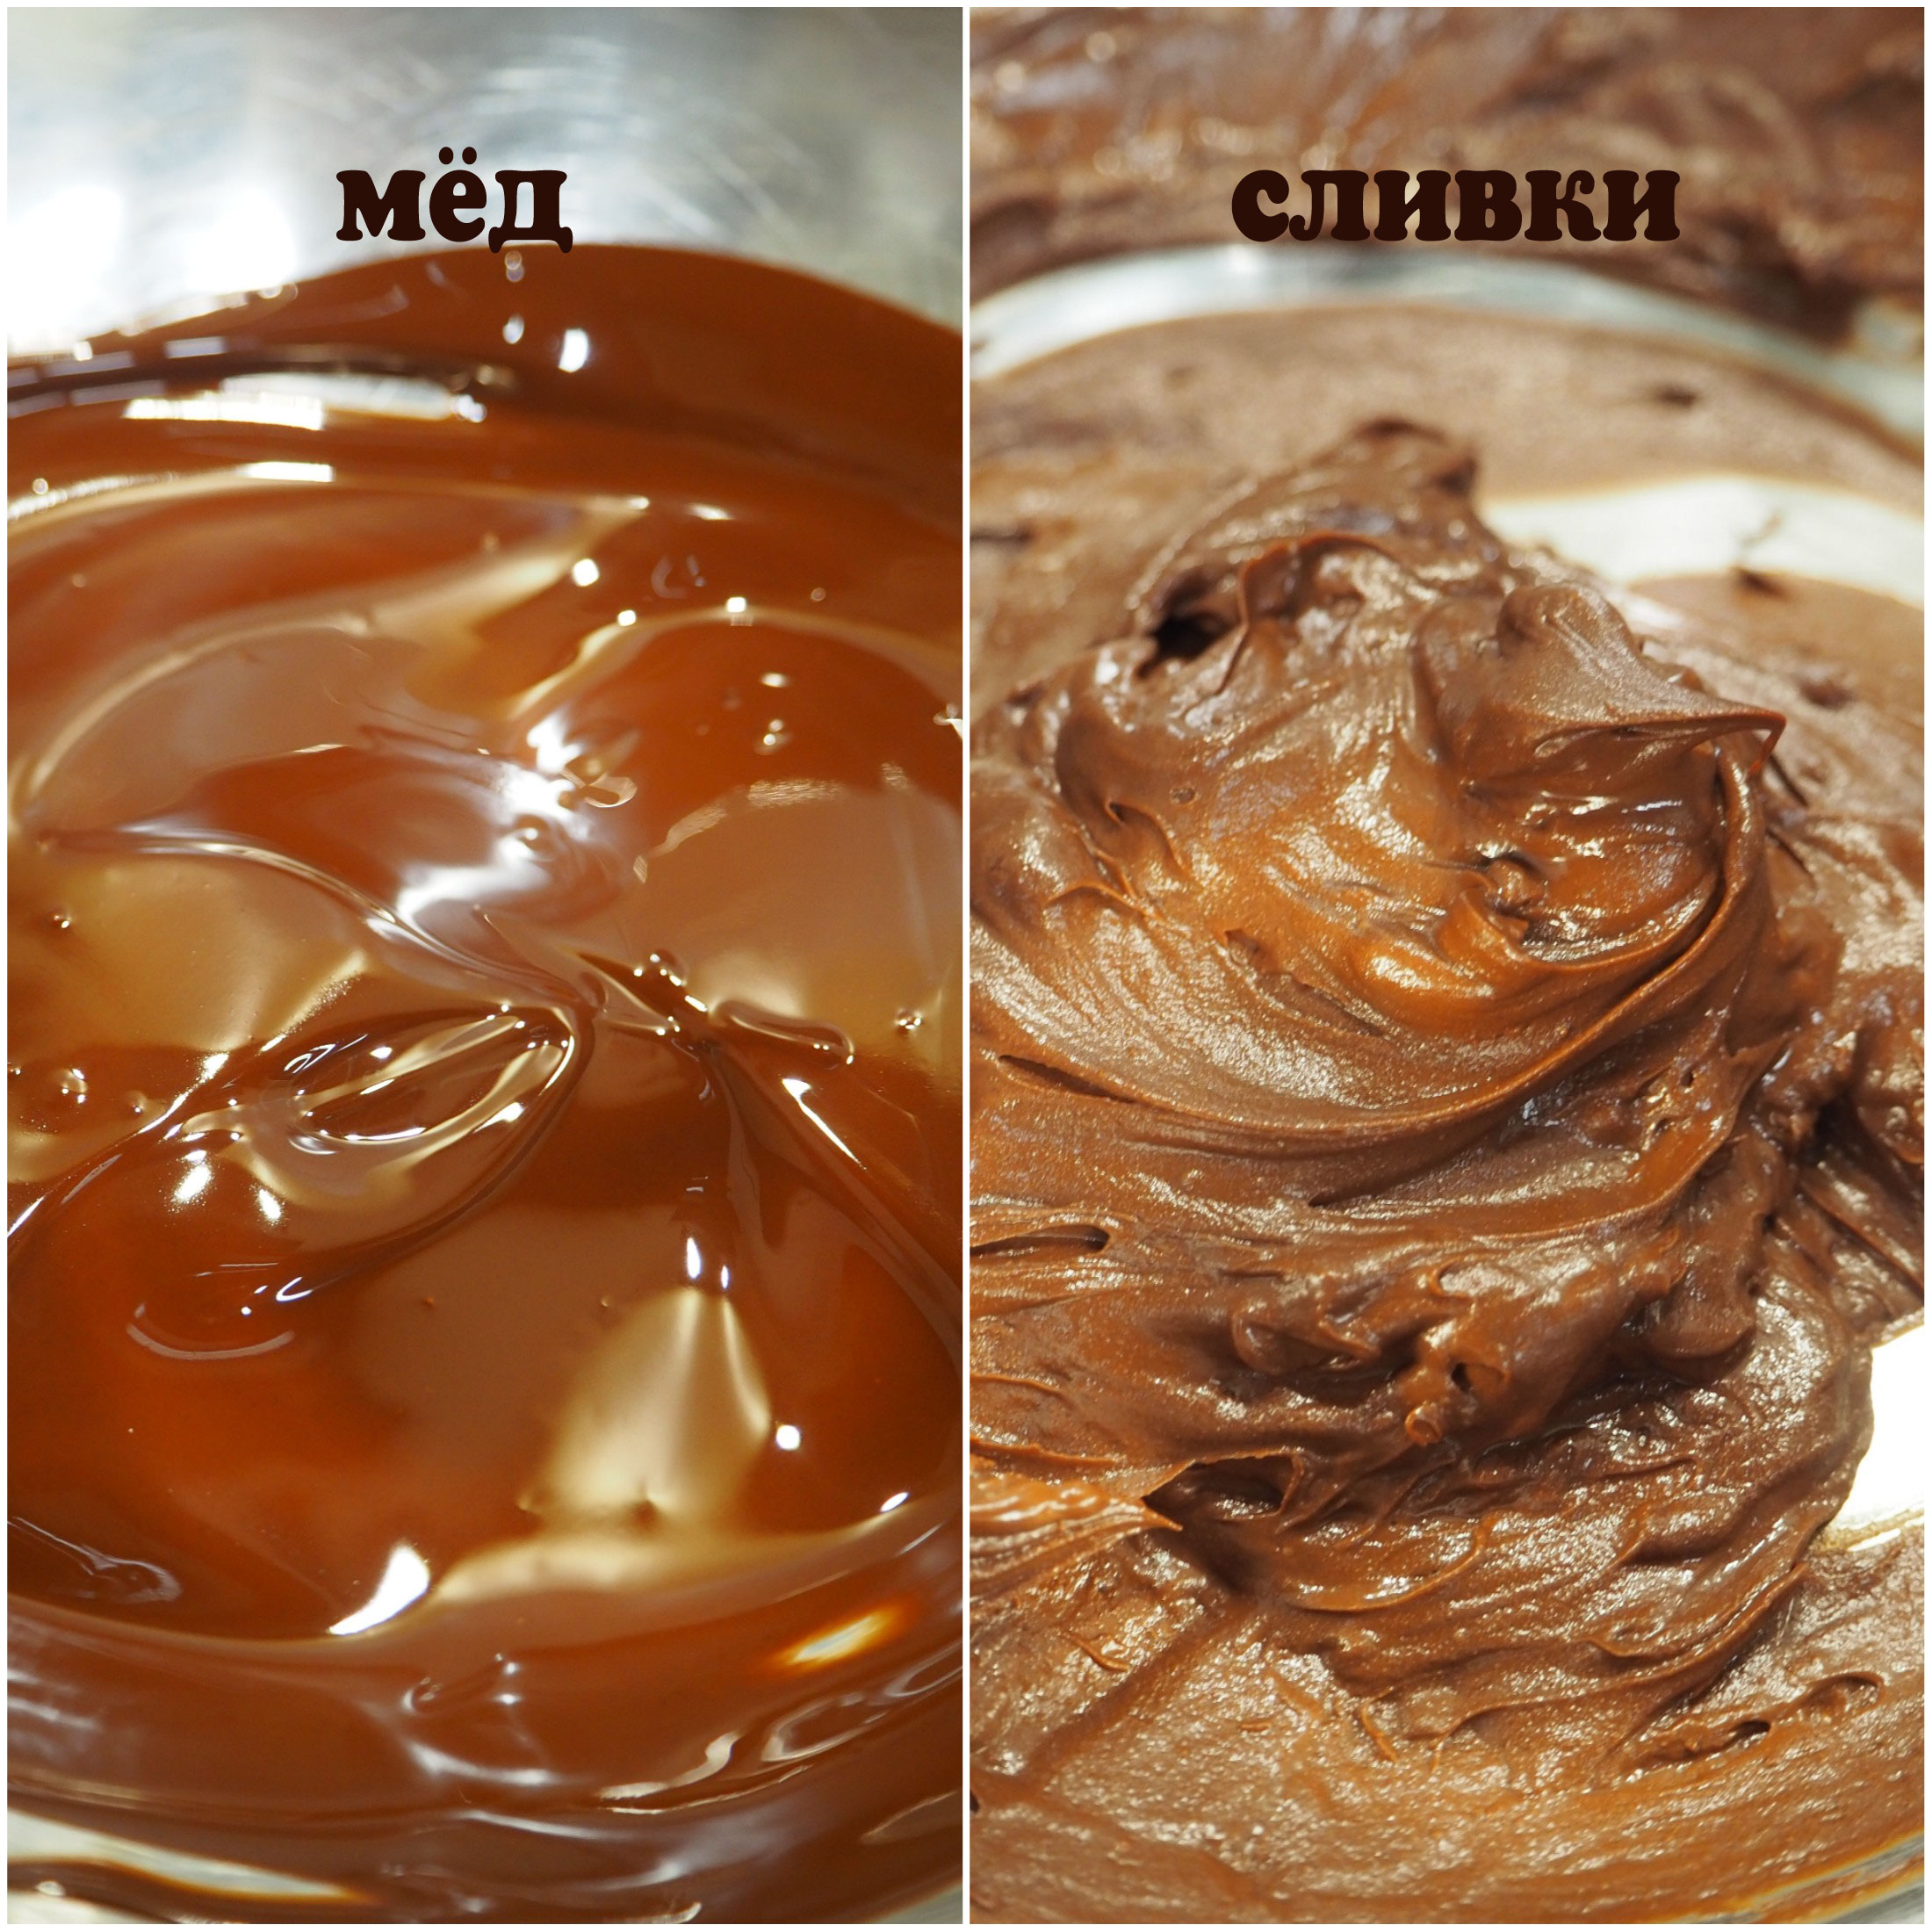 Как лучше растопить белый шоколад: в микроволновке или на водяной бане